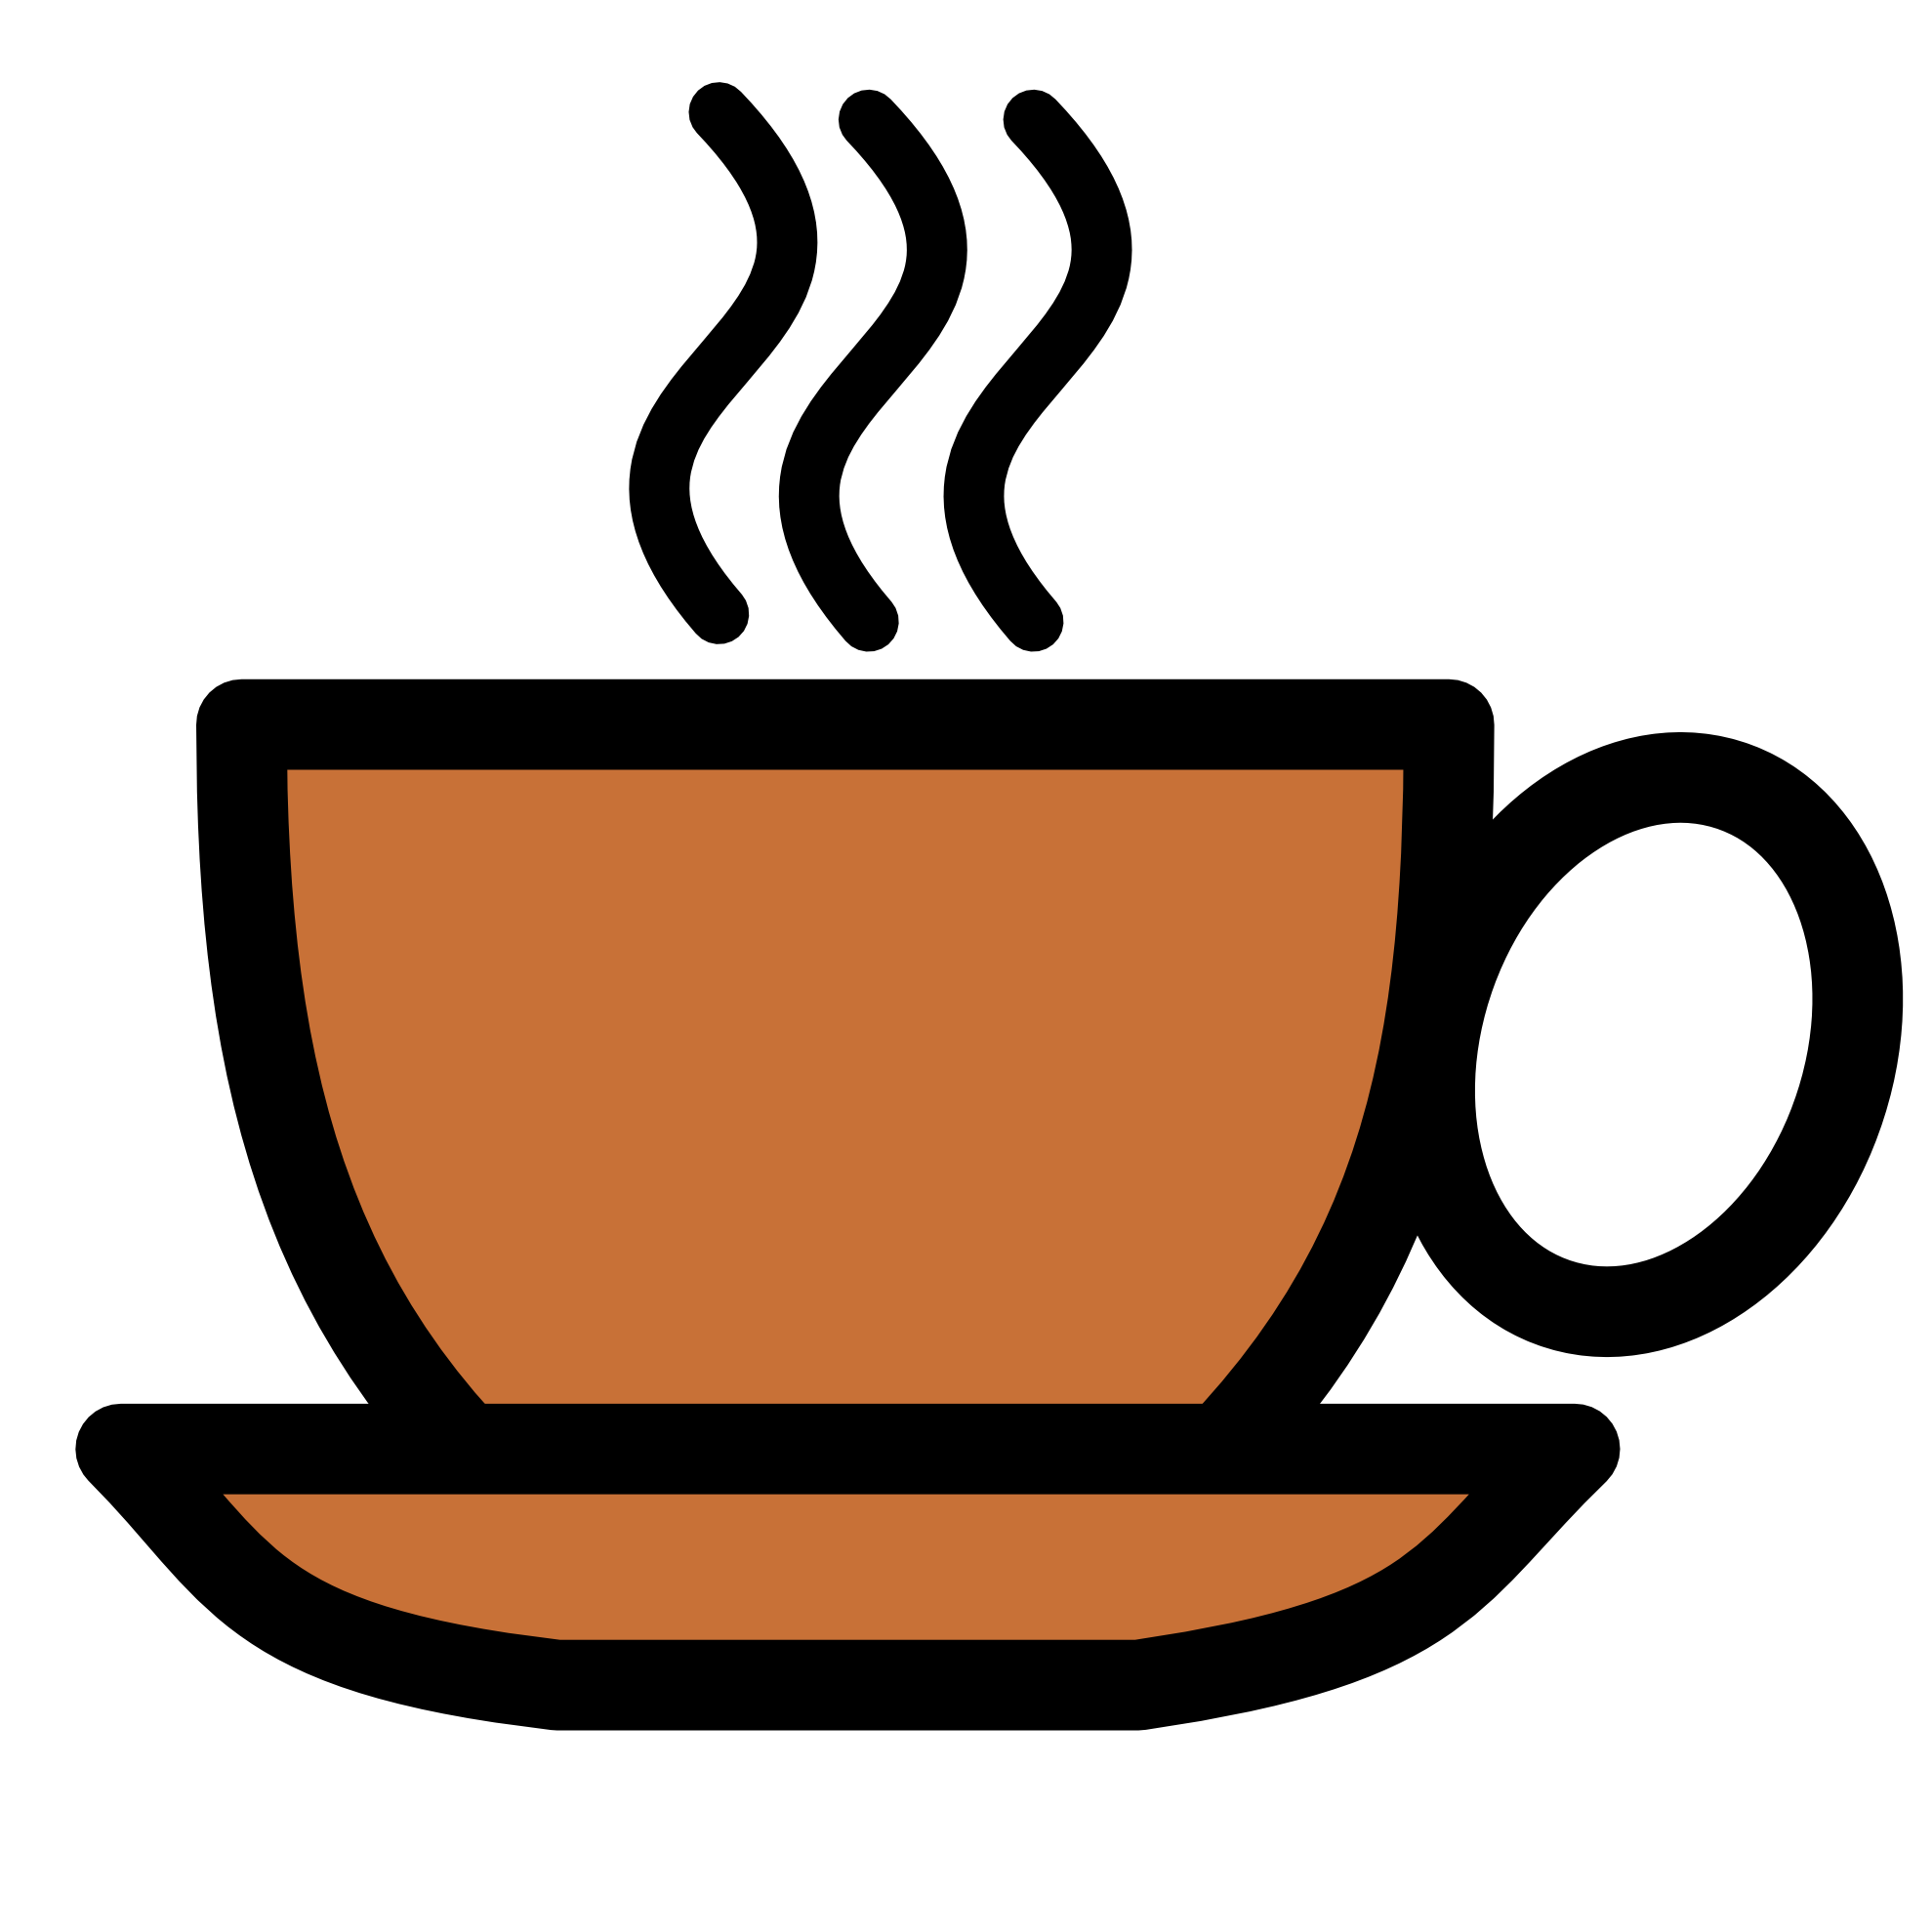 Logo du café PNG Image